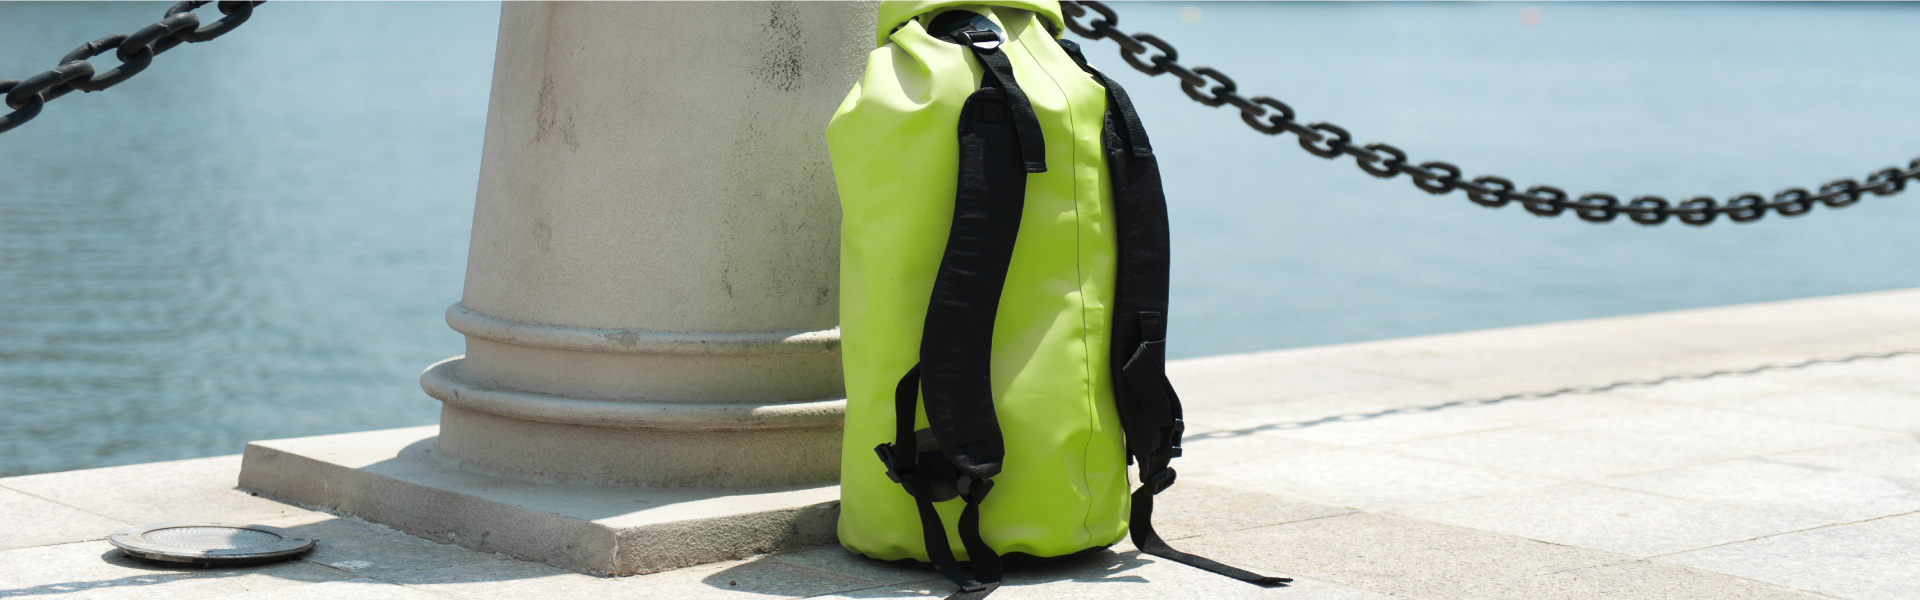 Balo chống nước Aqua Marina Regular Backpack 25L B0302835 - 8968 